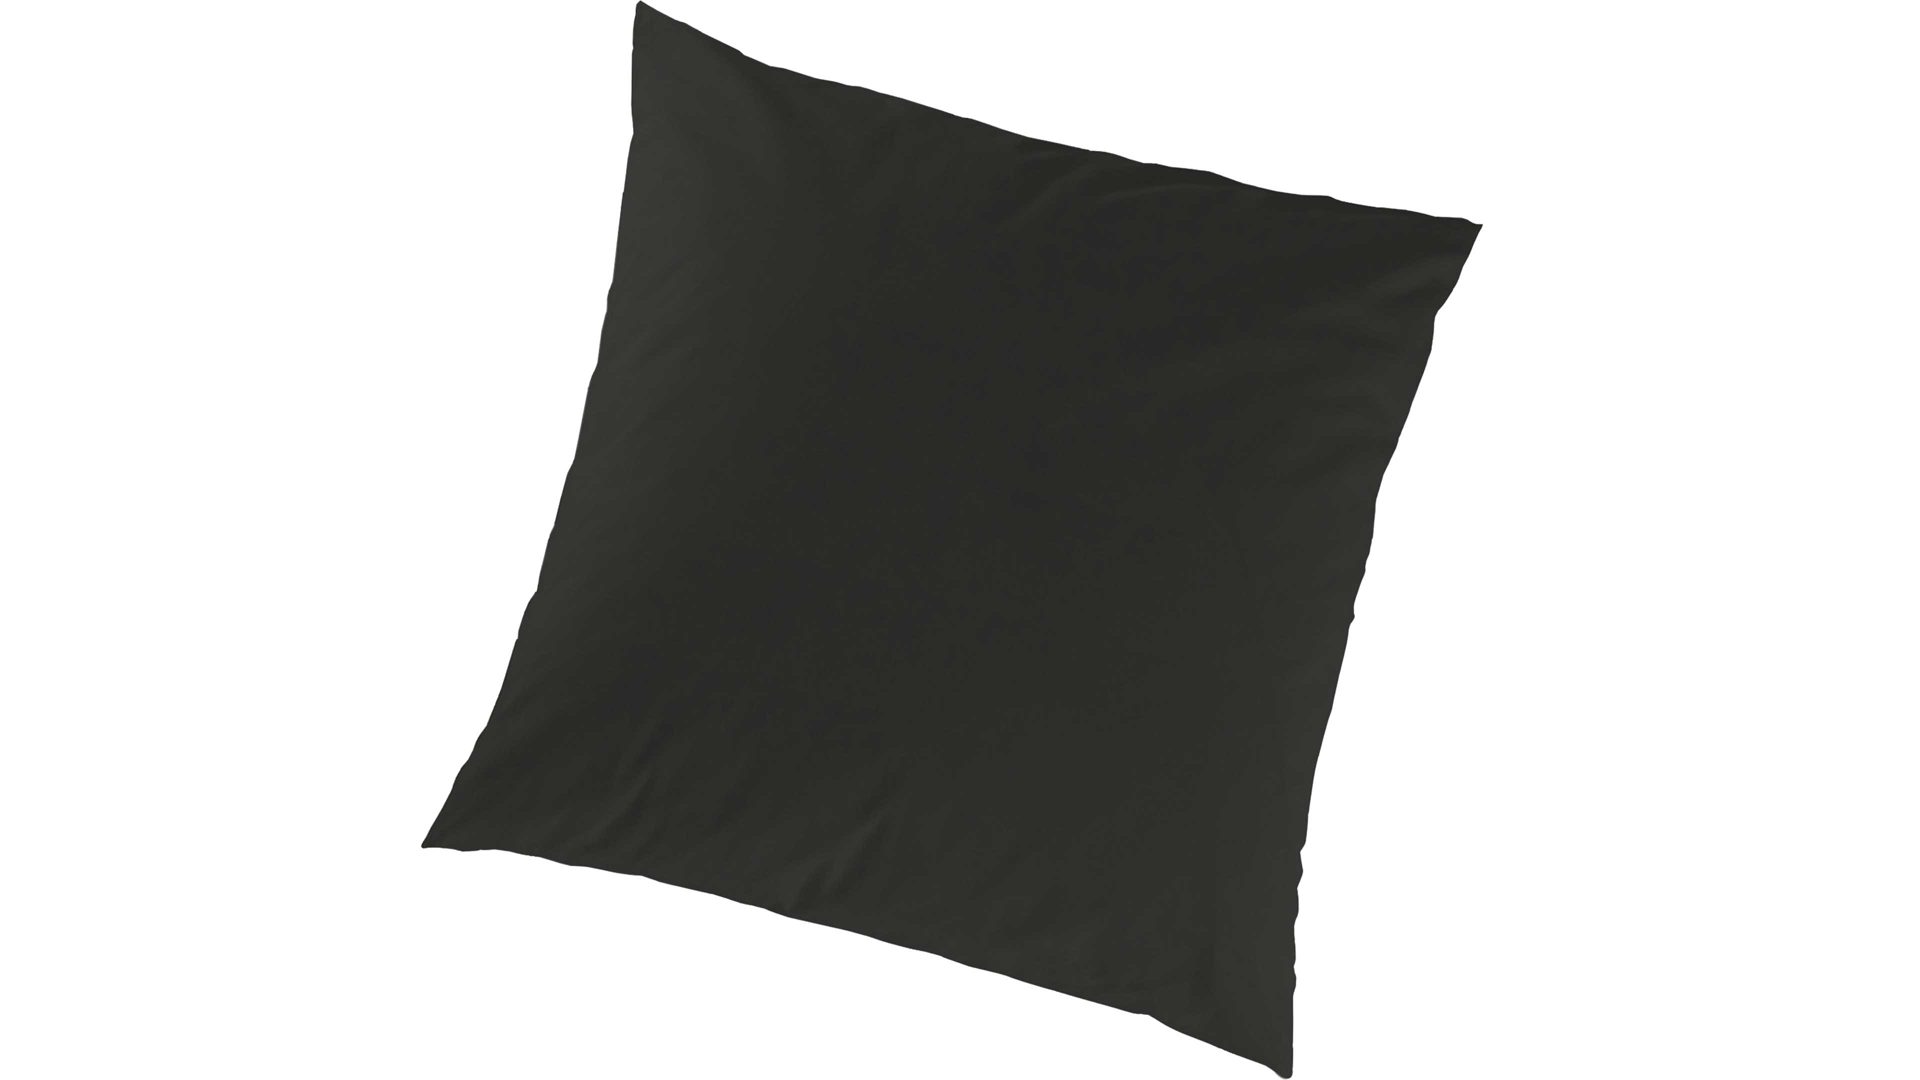 Kissenbezug /-hülle H.g. hahn haustextilien aus Stoff in Schwarz HAHN Luxus-Satin-Kopfkissenbezug Sempre schwarzer Baumwollsatin - ca. 40 x 40 cm